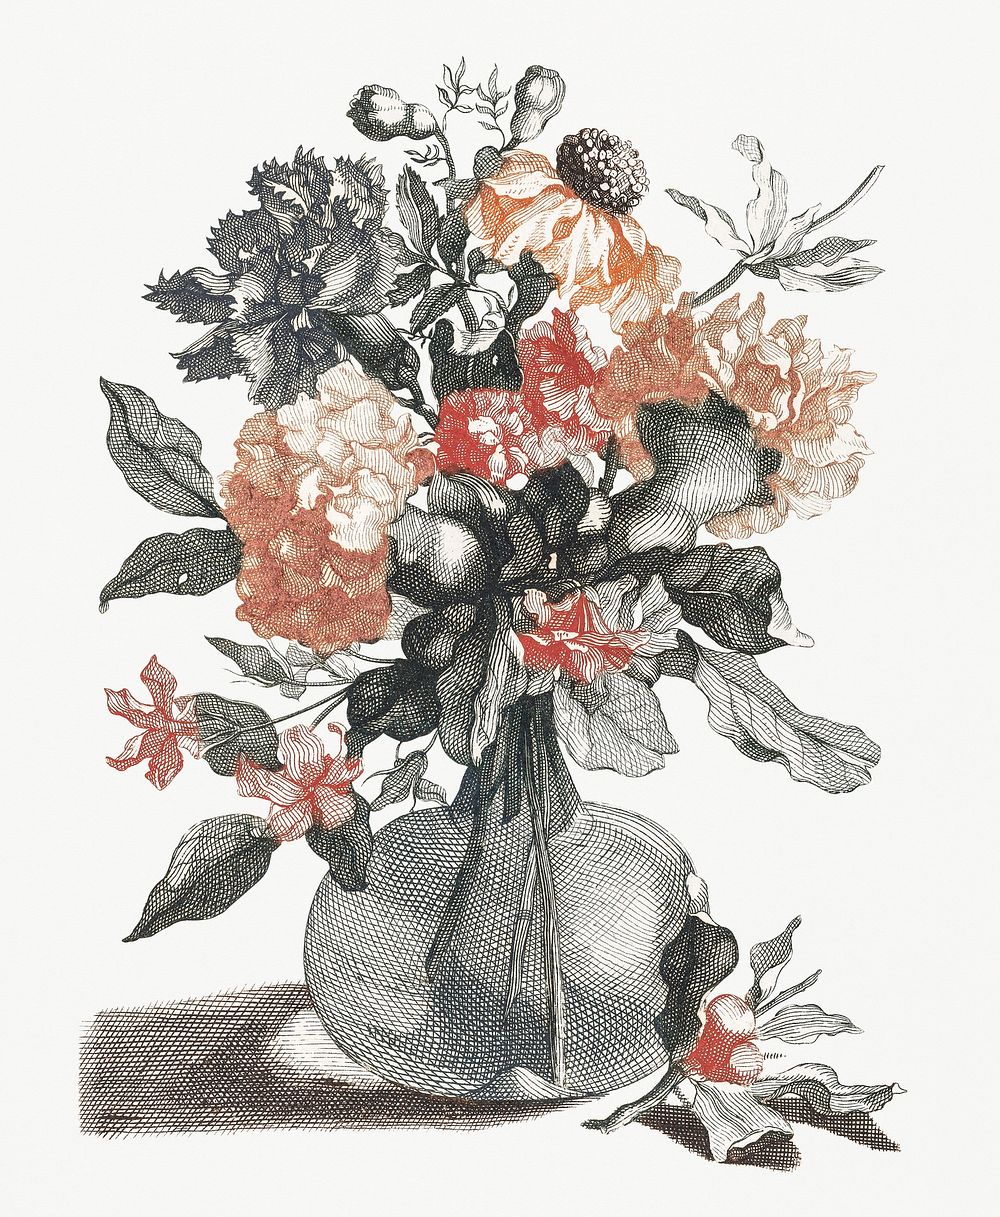 Flowers in a vase (1688-1698) by Johan Teyler (1648-1709). Original from Rijks Museum. Digitally enhanced by rawpixel.